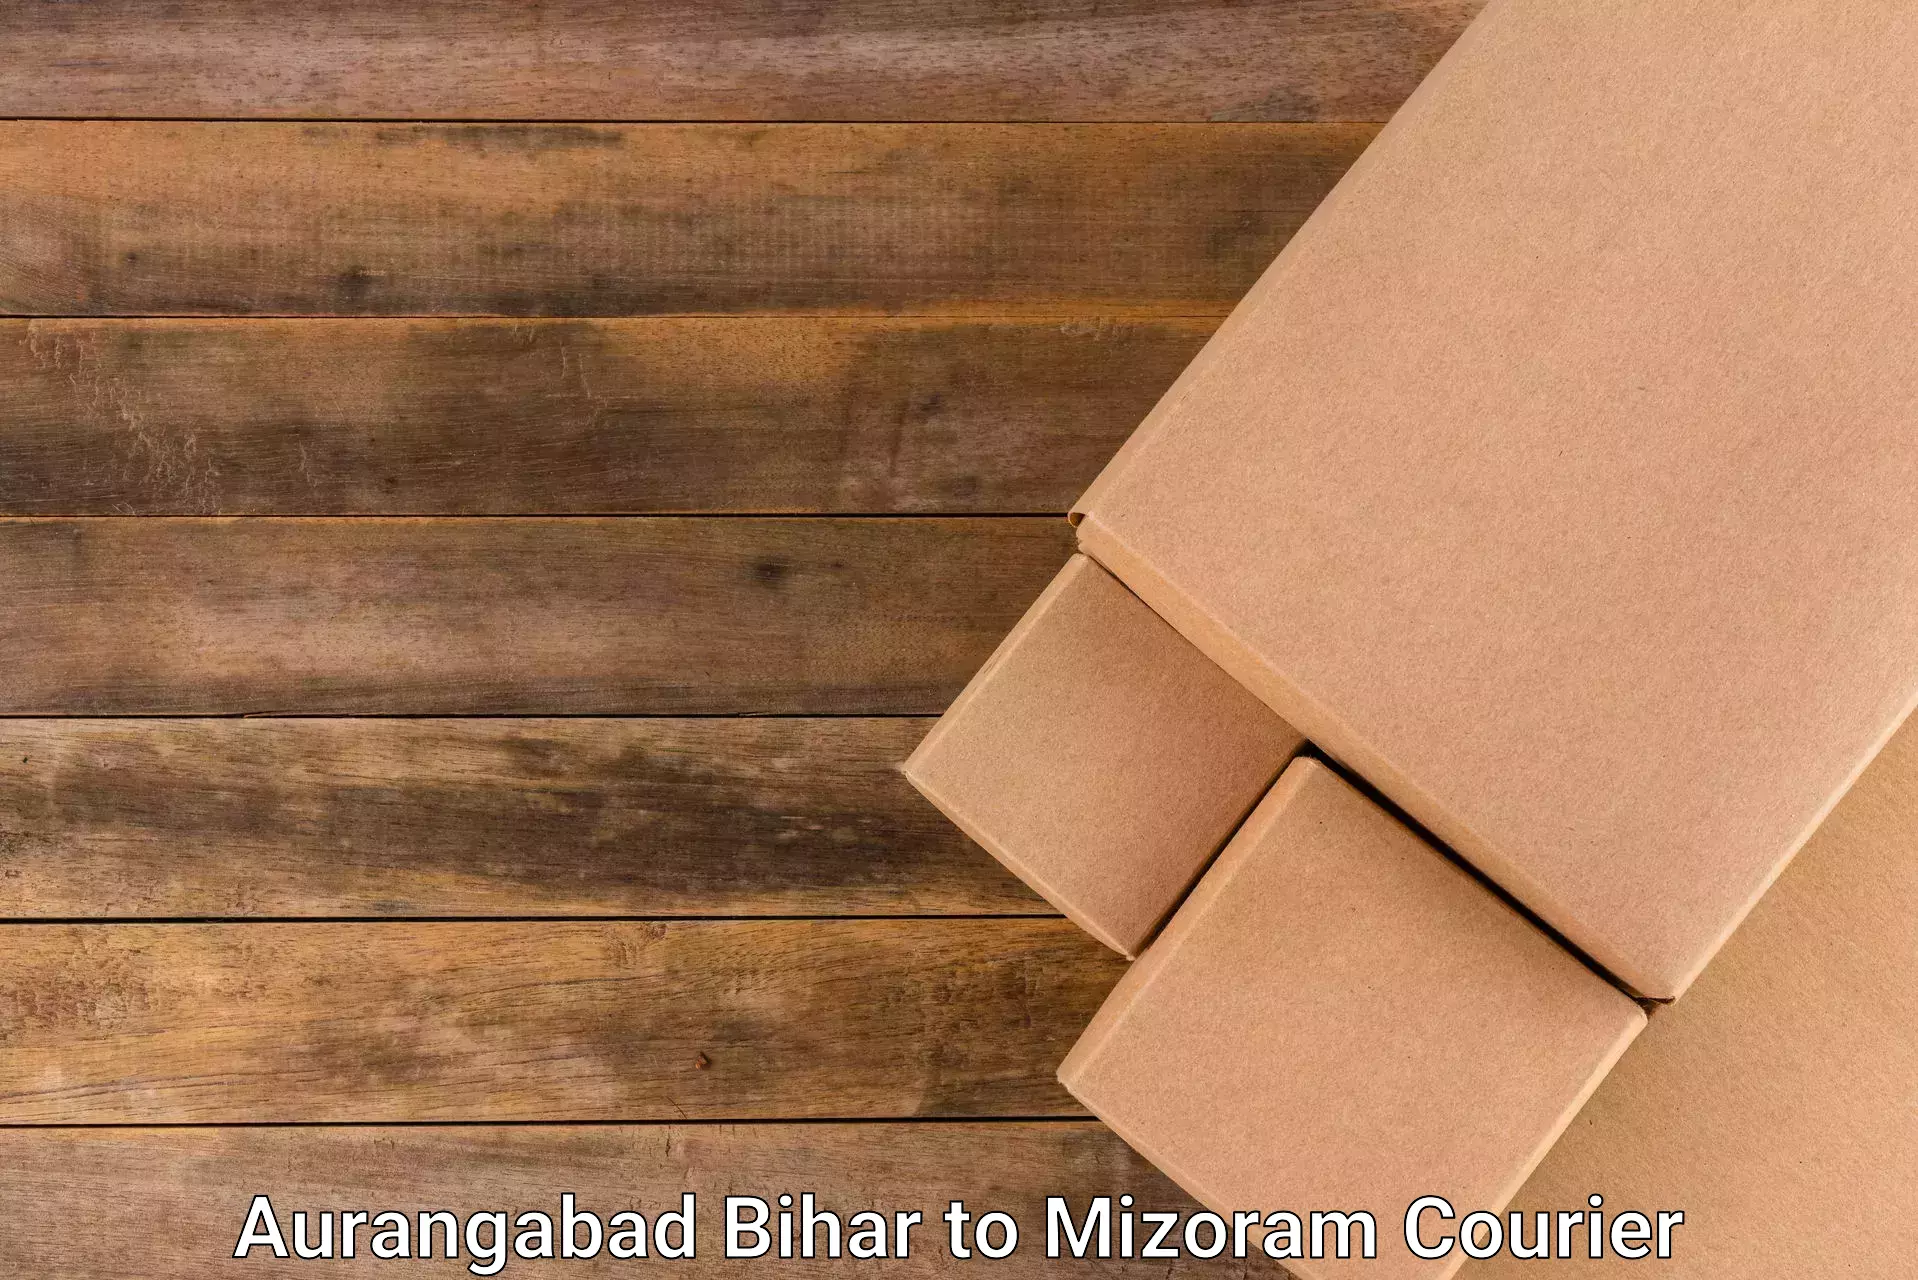 Cargo courier service Aurangabad Bihar to Thenzawl